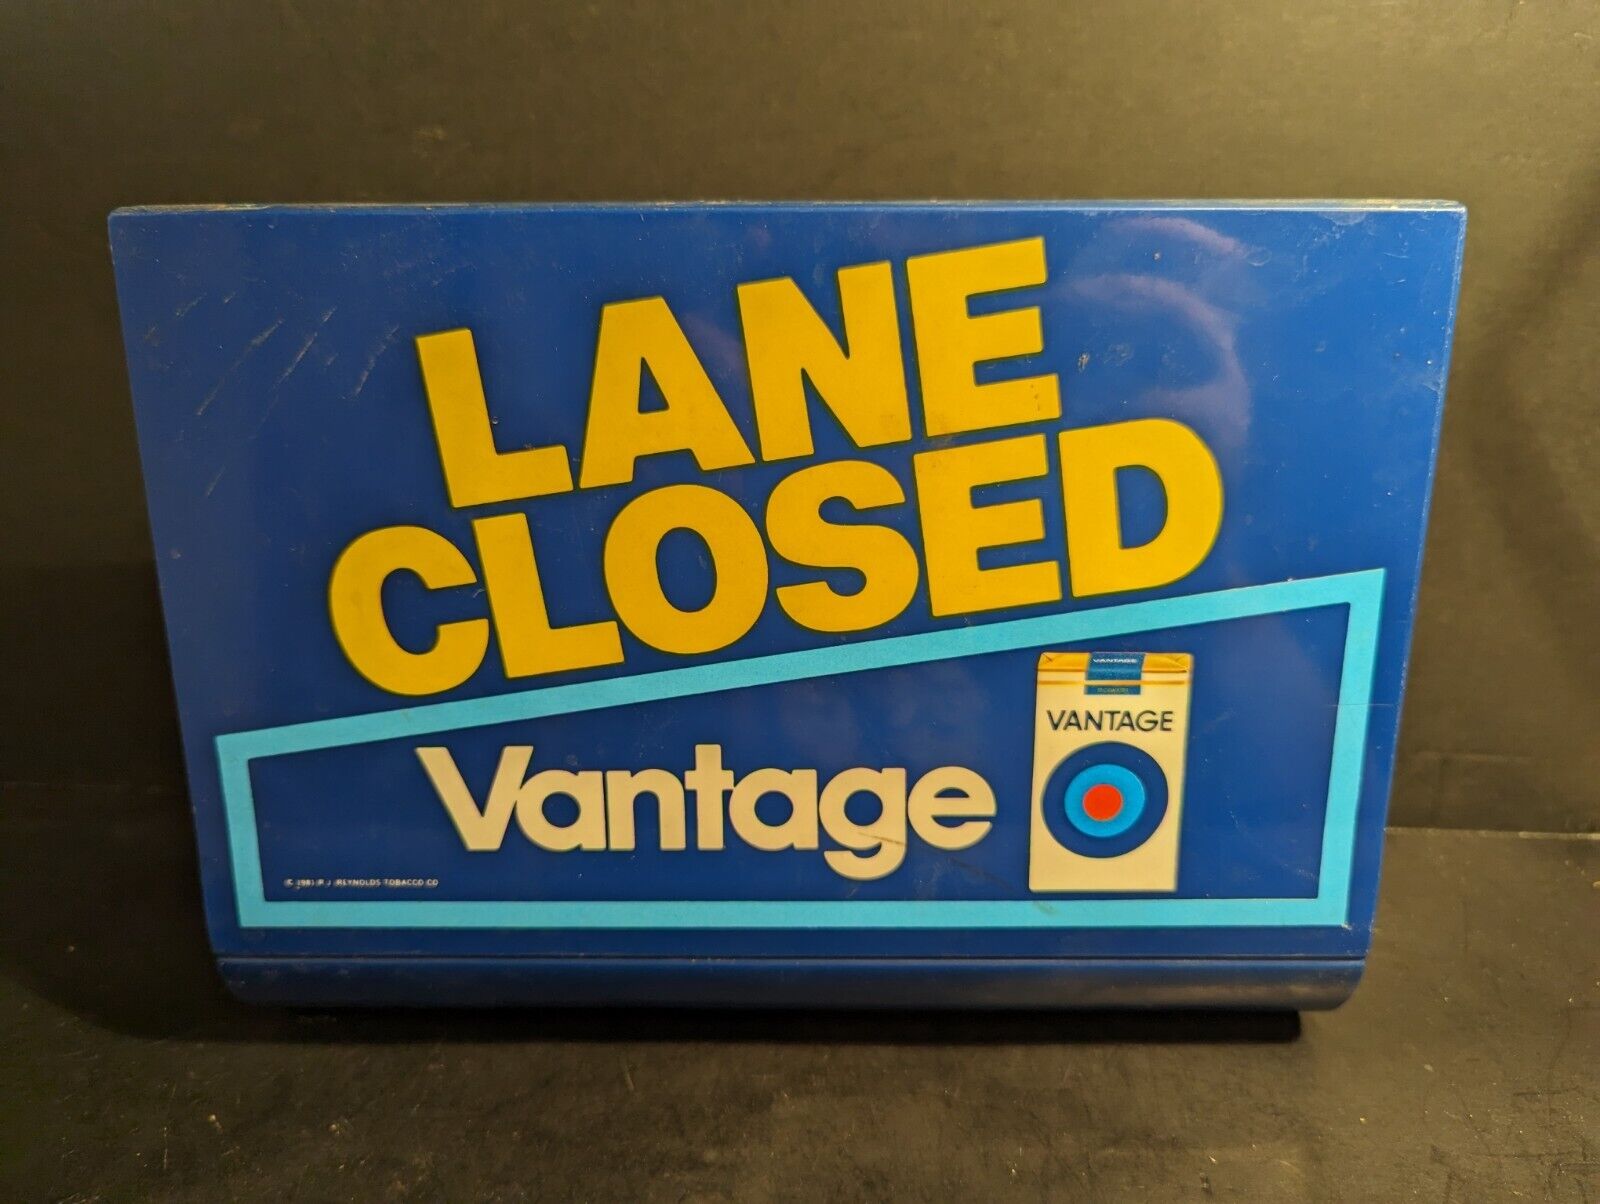 Vtg 1981 Vantage Cigarette Register Lane Closed Blue Sign Double Sided